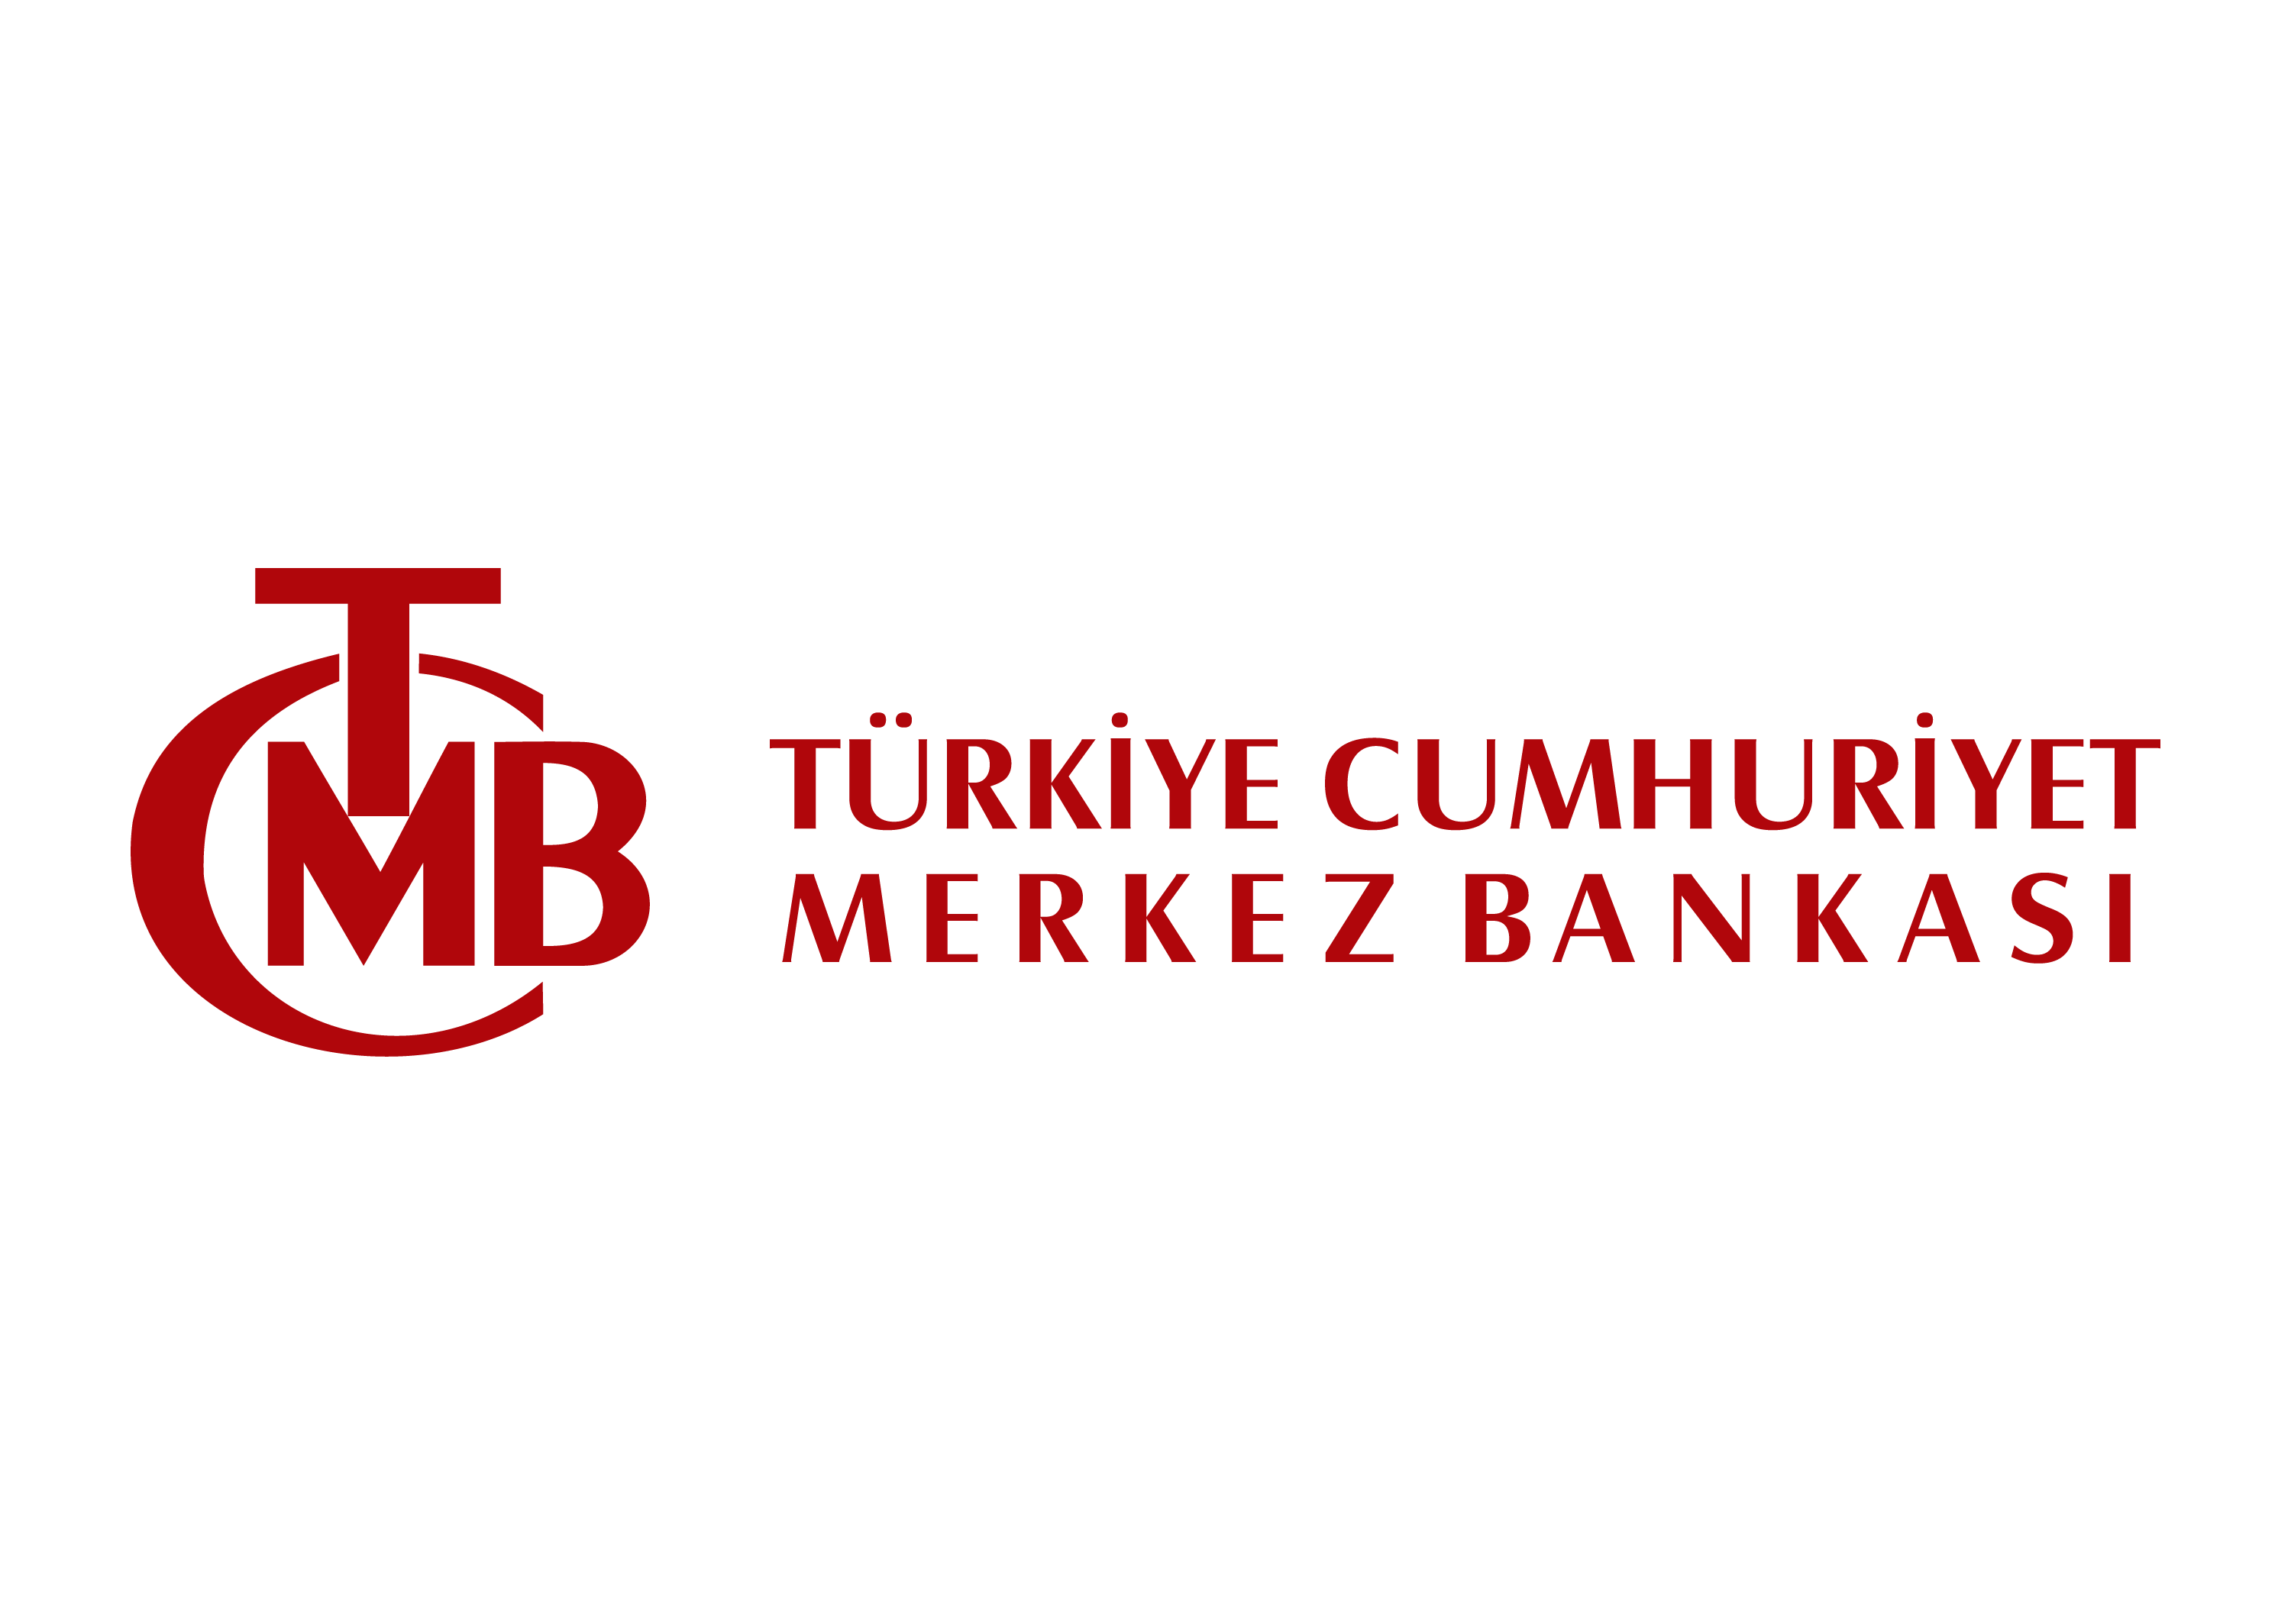 tcmb-turkiye-cumhuriyet-merkez-bankasi